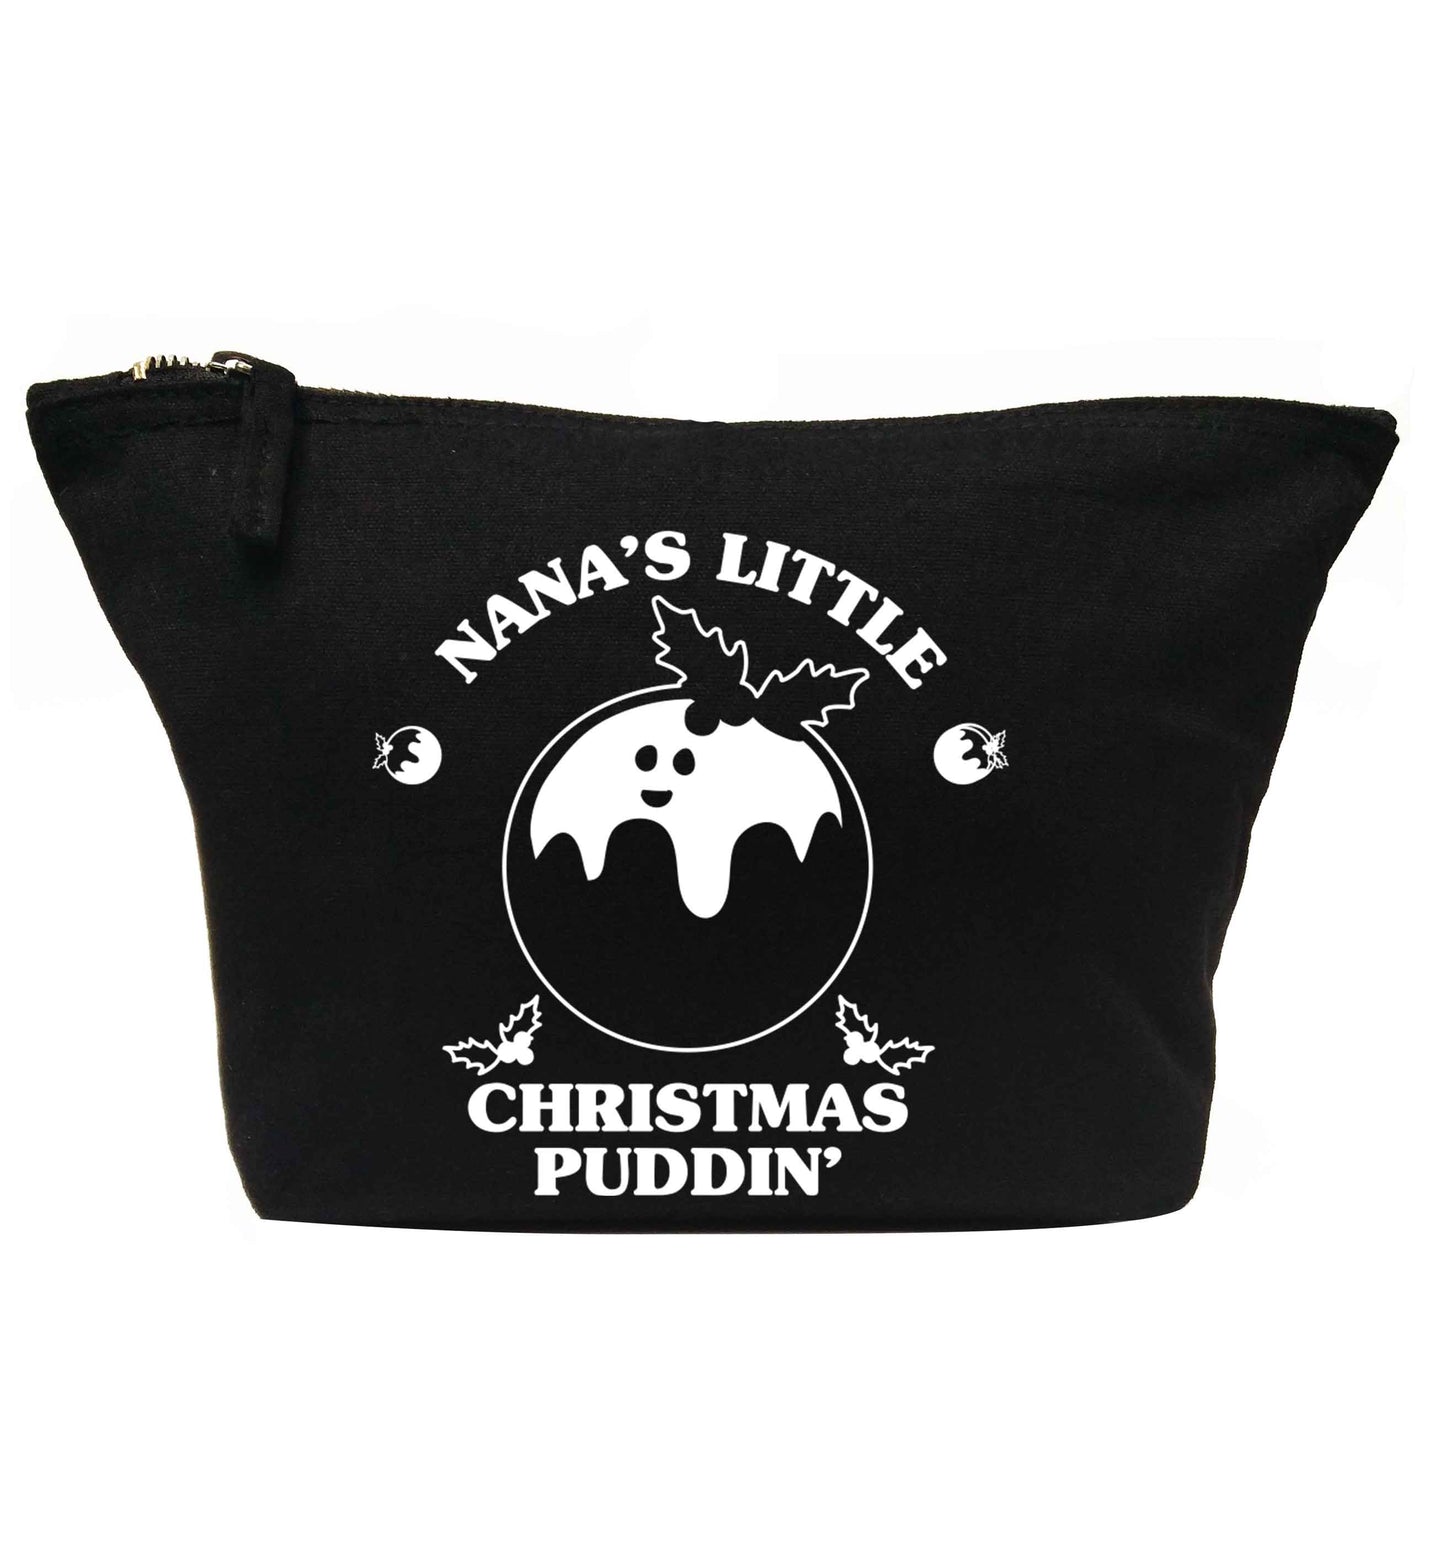 Nana's little Christmas puddin' | makeup / wash bag